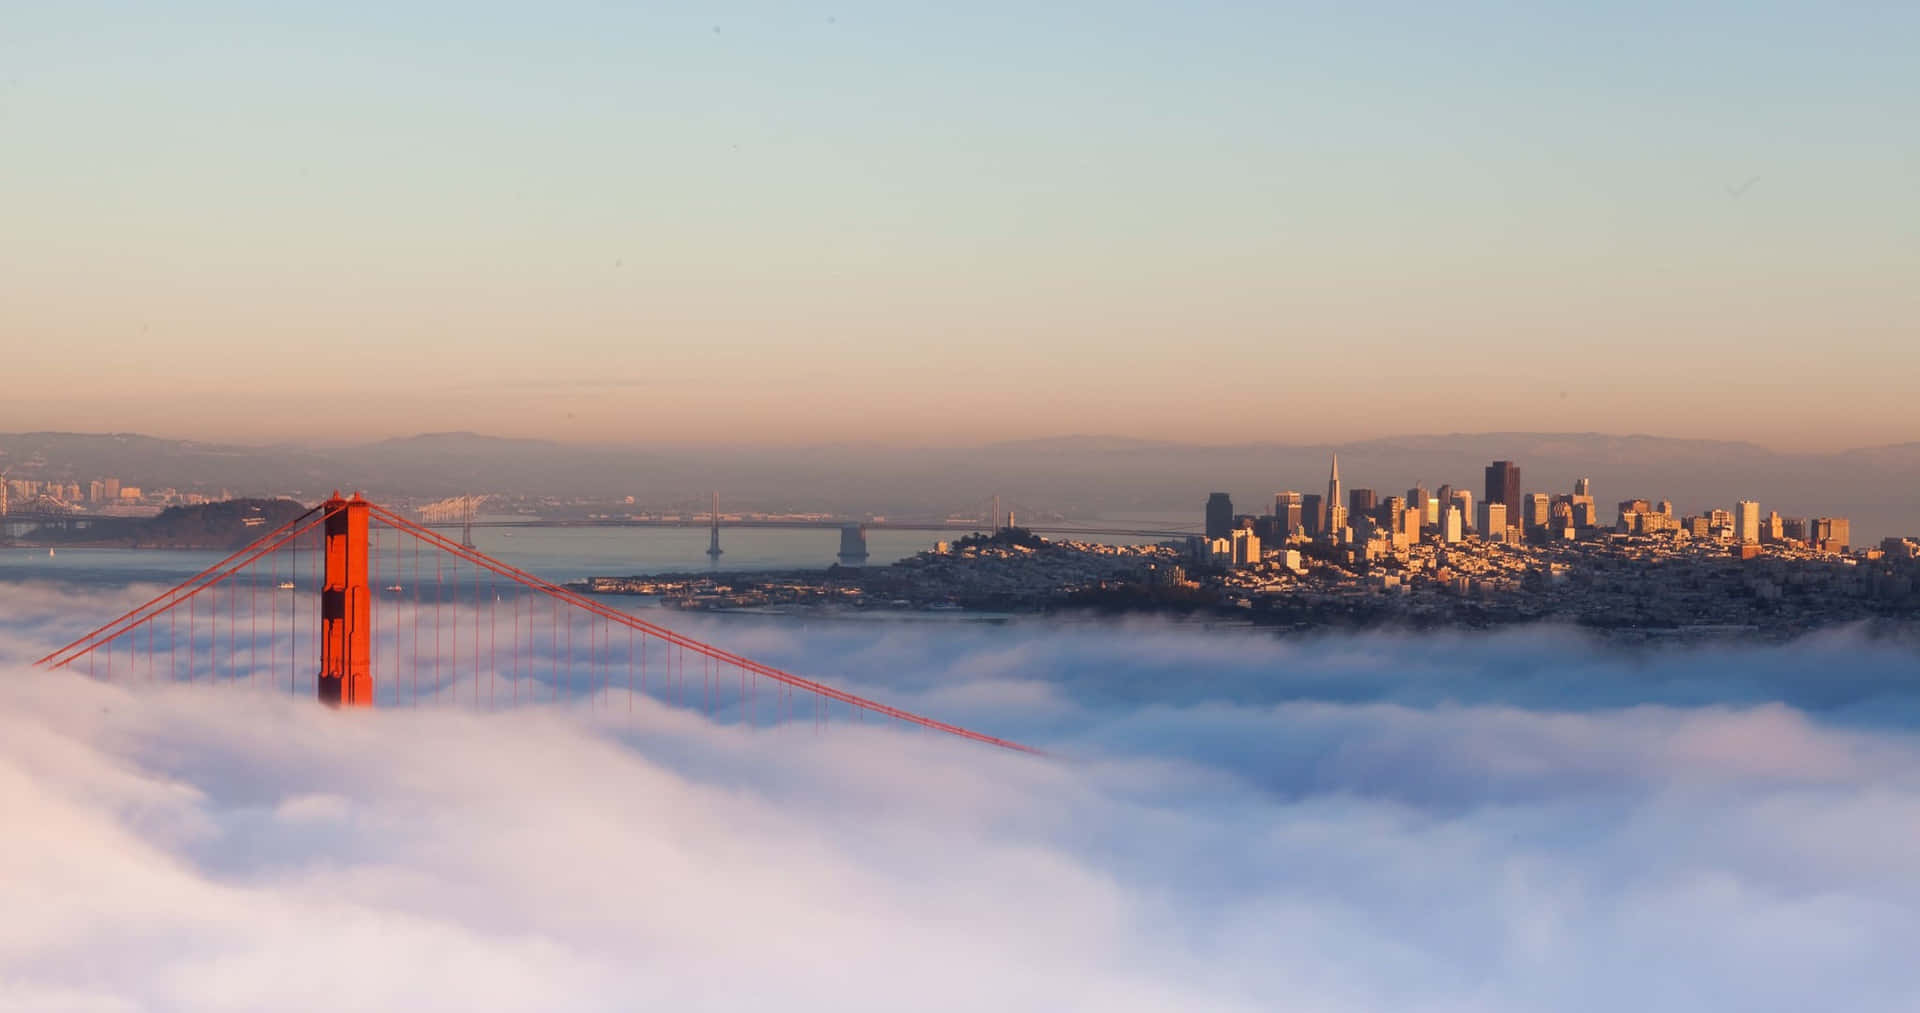 Weißernebel Bedeckt Die Bucht - Das Beste Hintergrundbild Für San Francisco